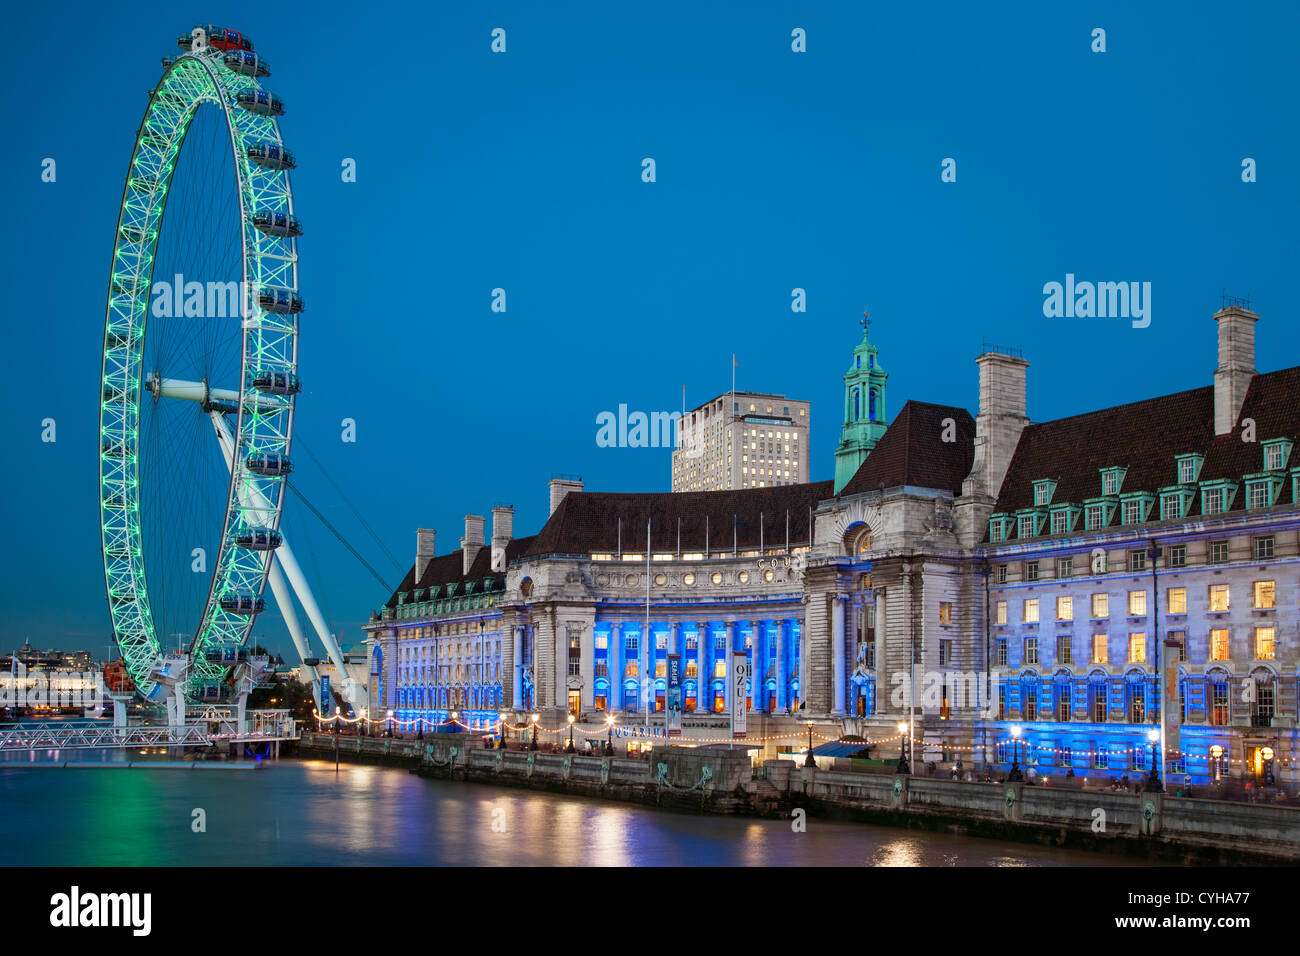 Crépuscule au London Eye le long de la rivière Thames, London England, UK Banque D'Images